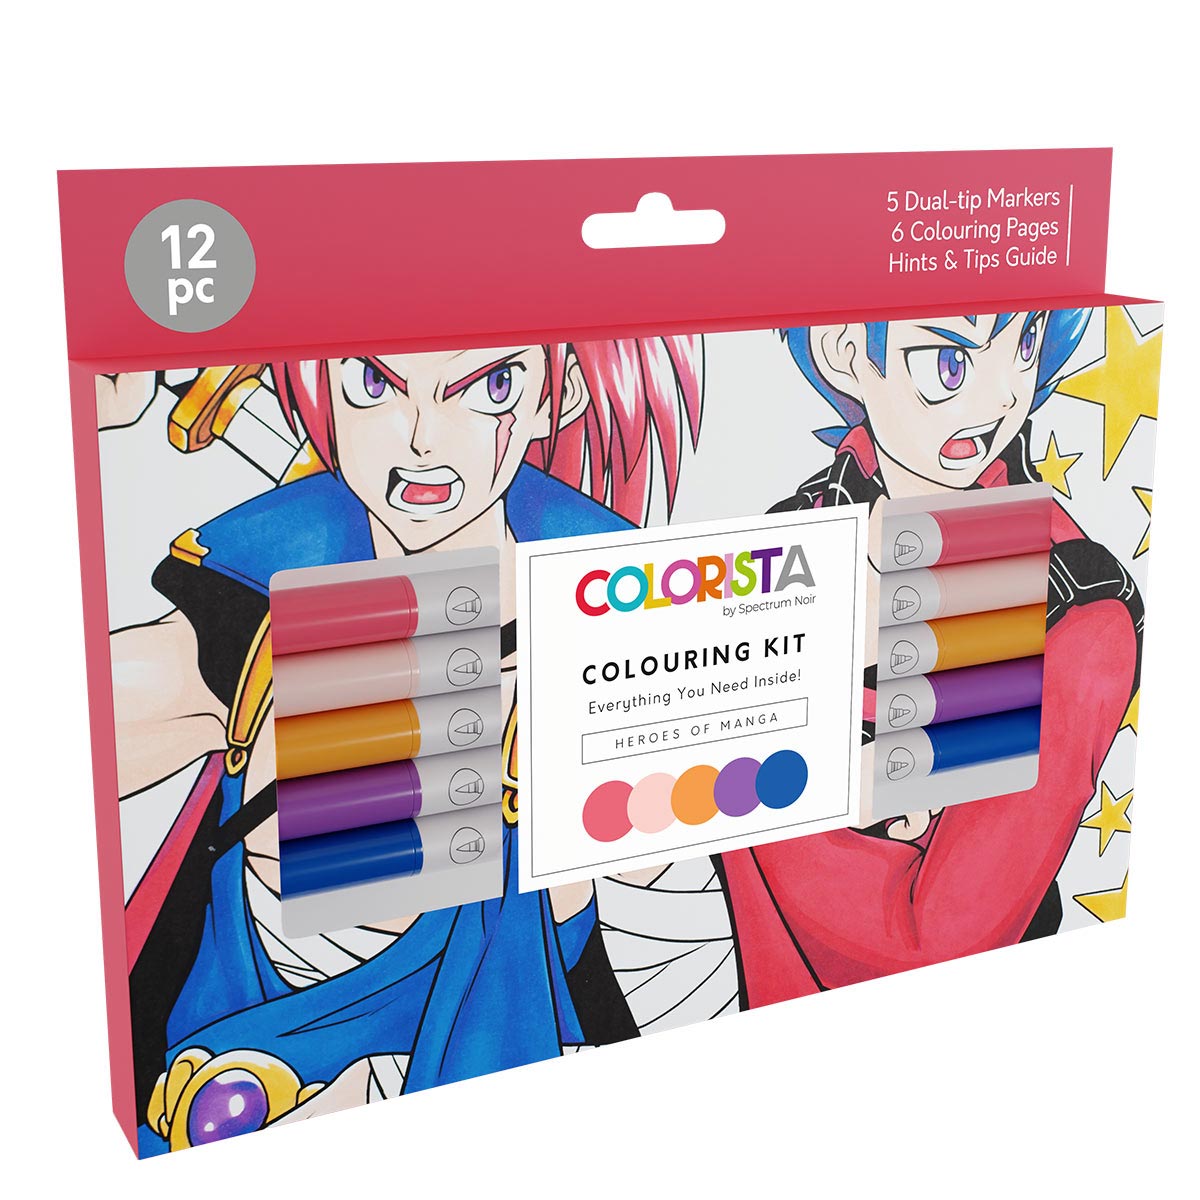 Spectrum Noir Colorista - Kit da colorare - Marcatori a spazzole con alcool a doppia punta - Heroes of Manga